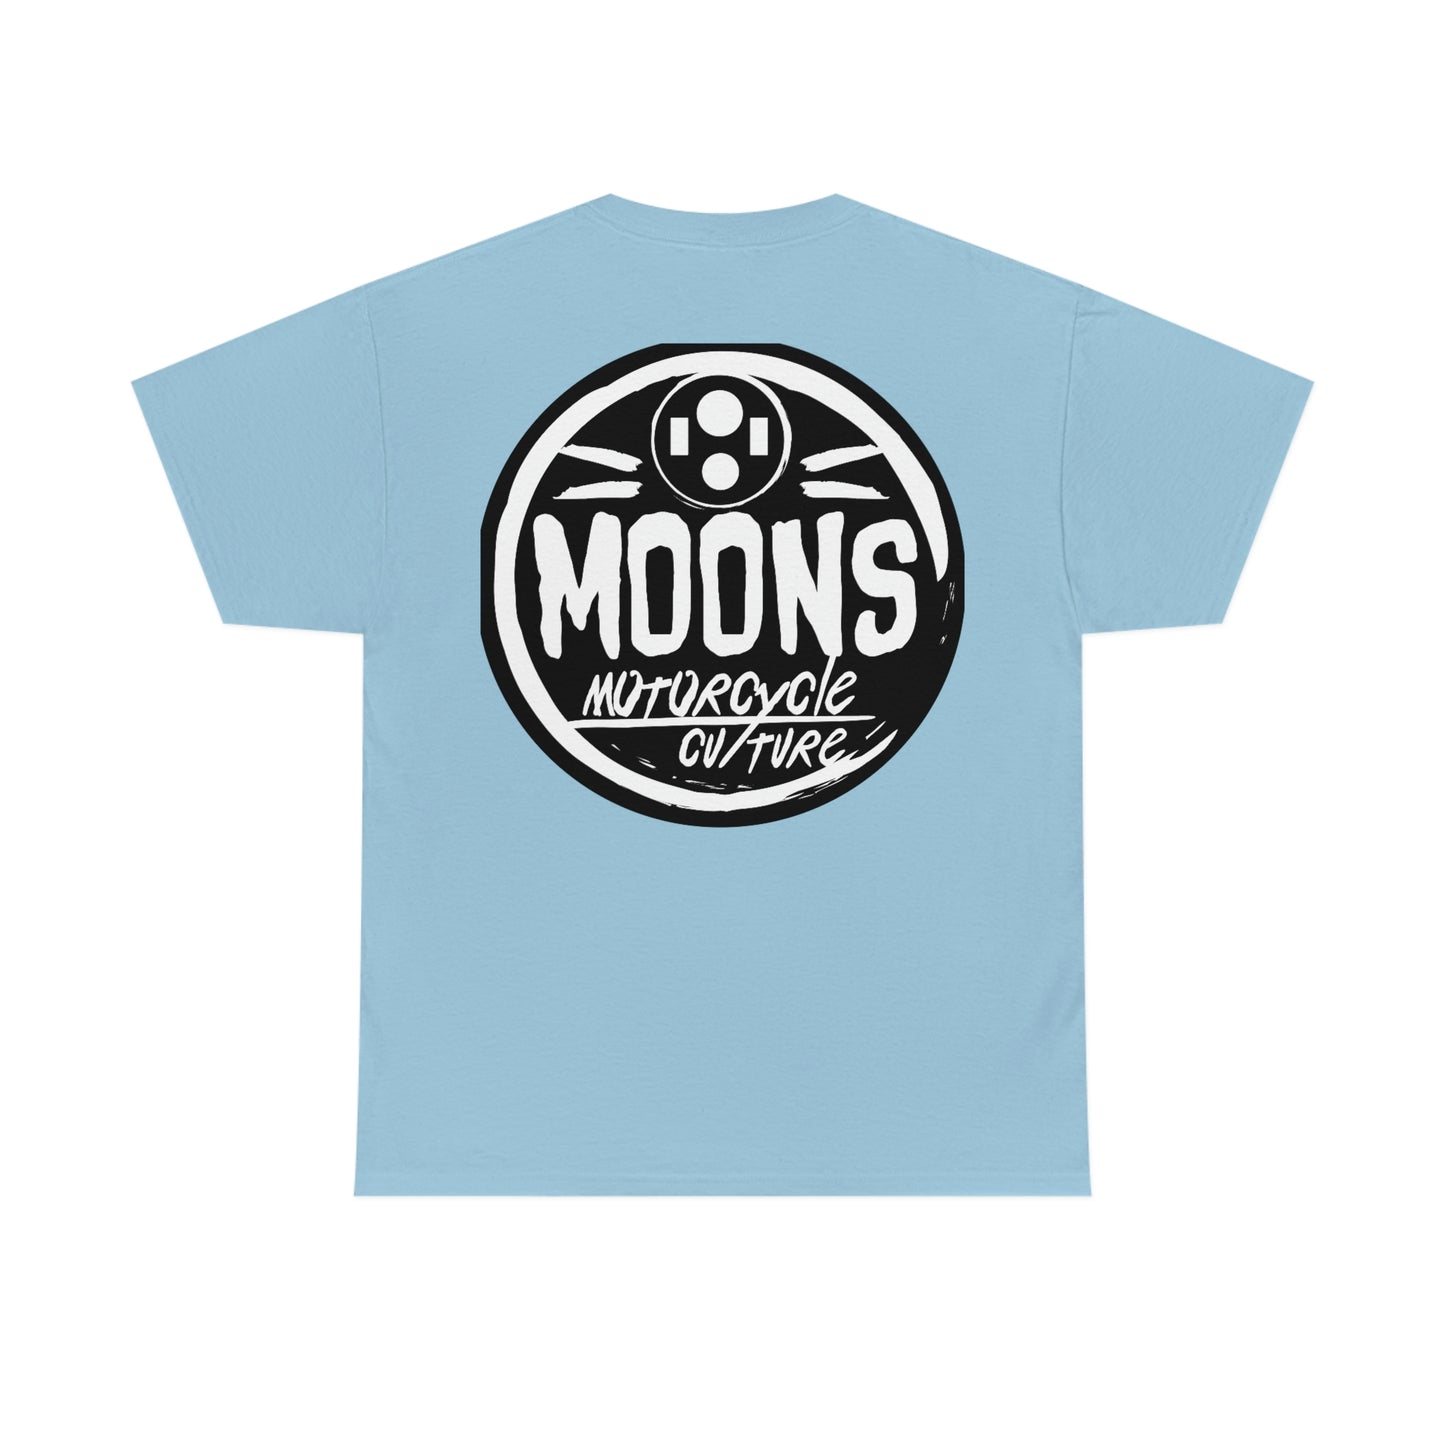 MOONSMC® ヘッドライト サークル ロゴ T シャツ